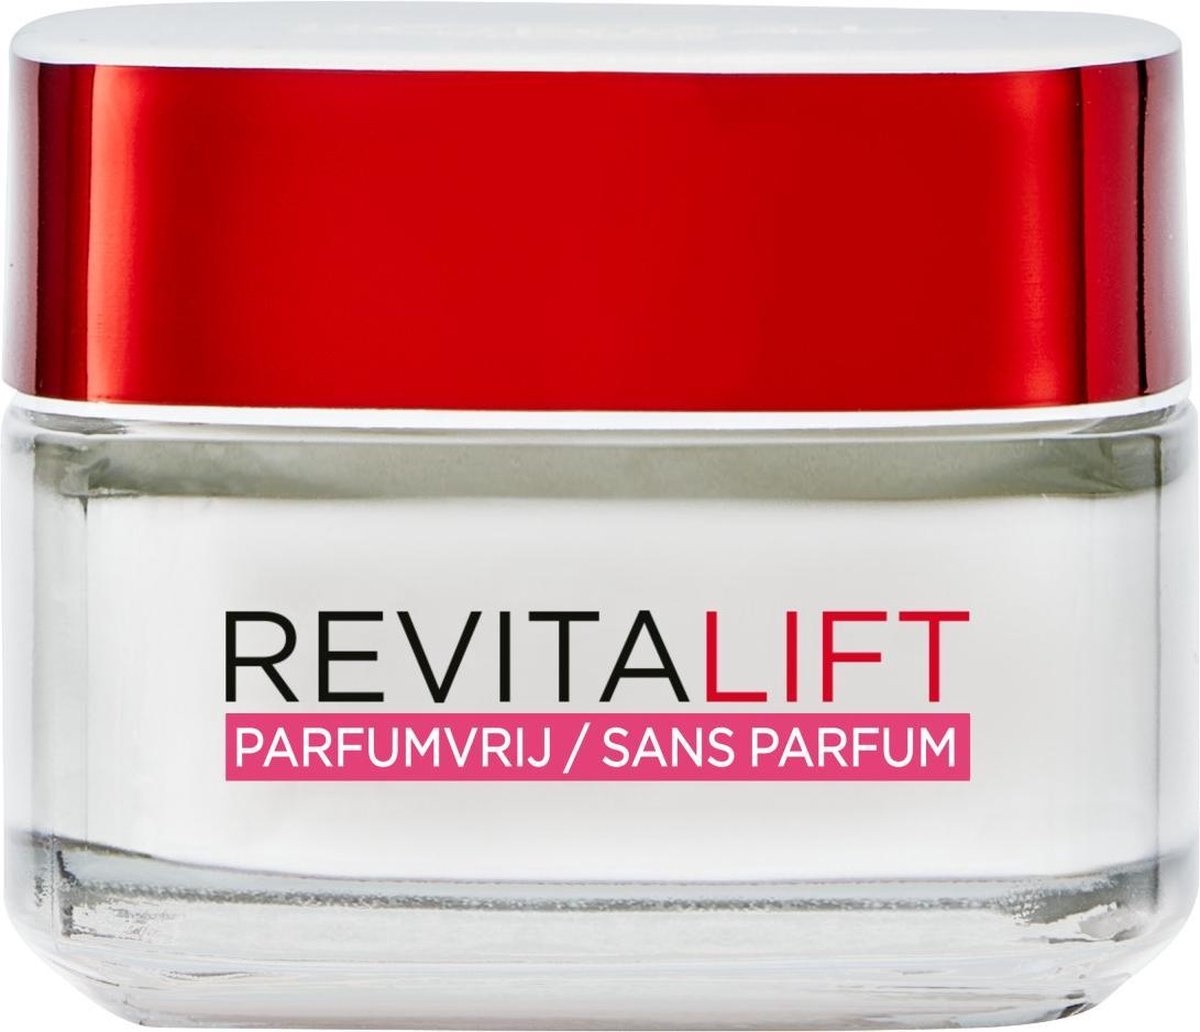 L'Oréal Paris Revitalift parfümfreie Tagescreme - 50ml